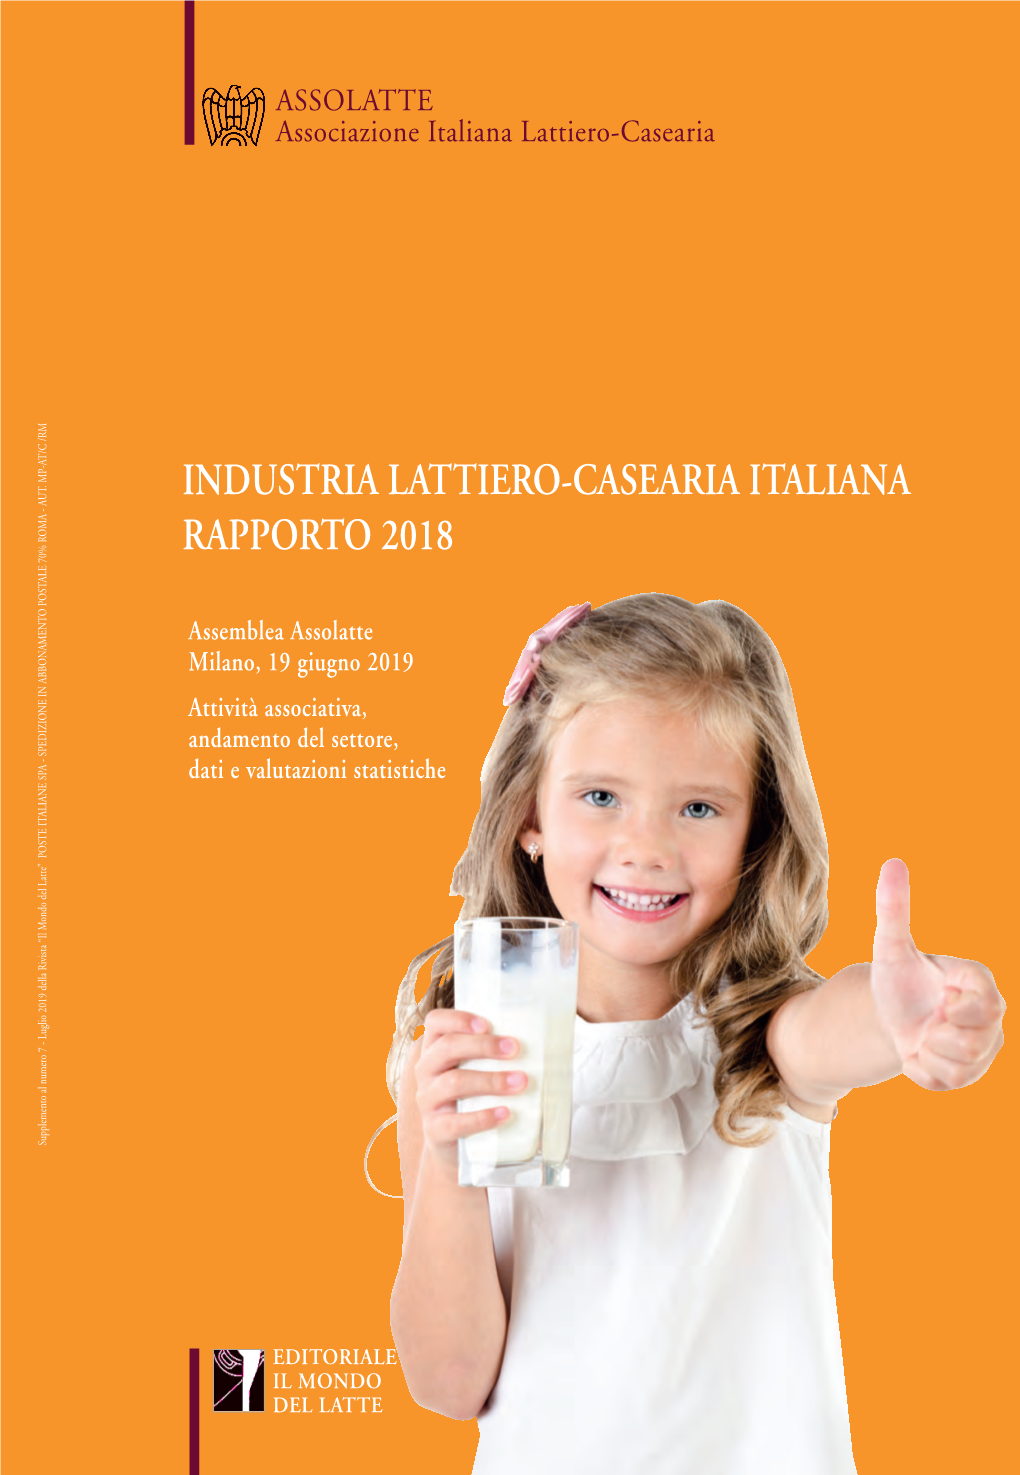 Industria Lattiero-Casearia Italiana Rapporto 2018